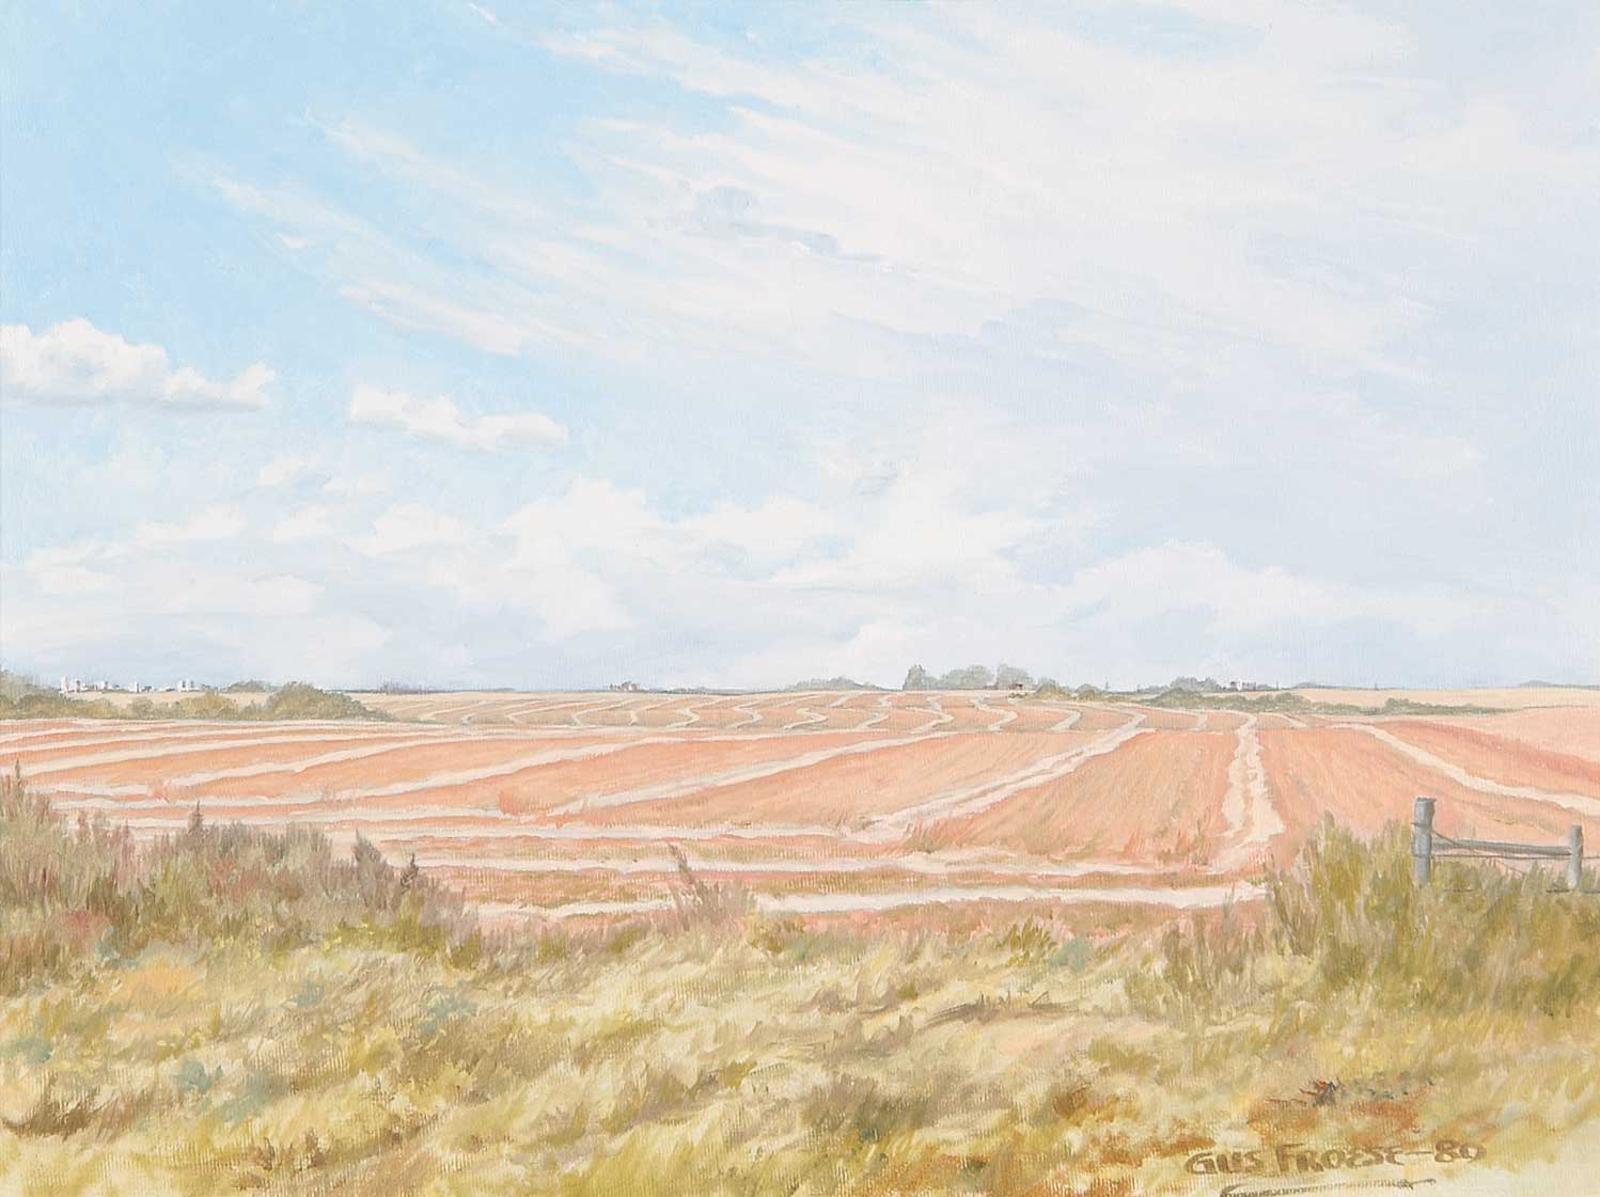 Gus Froese - Untitled - Prairie Skies